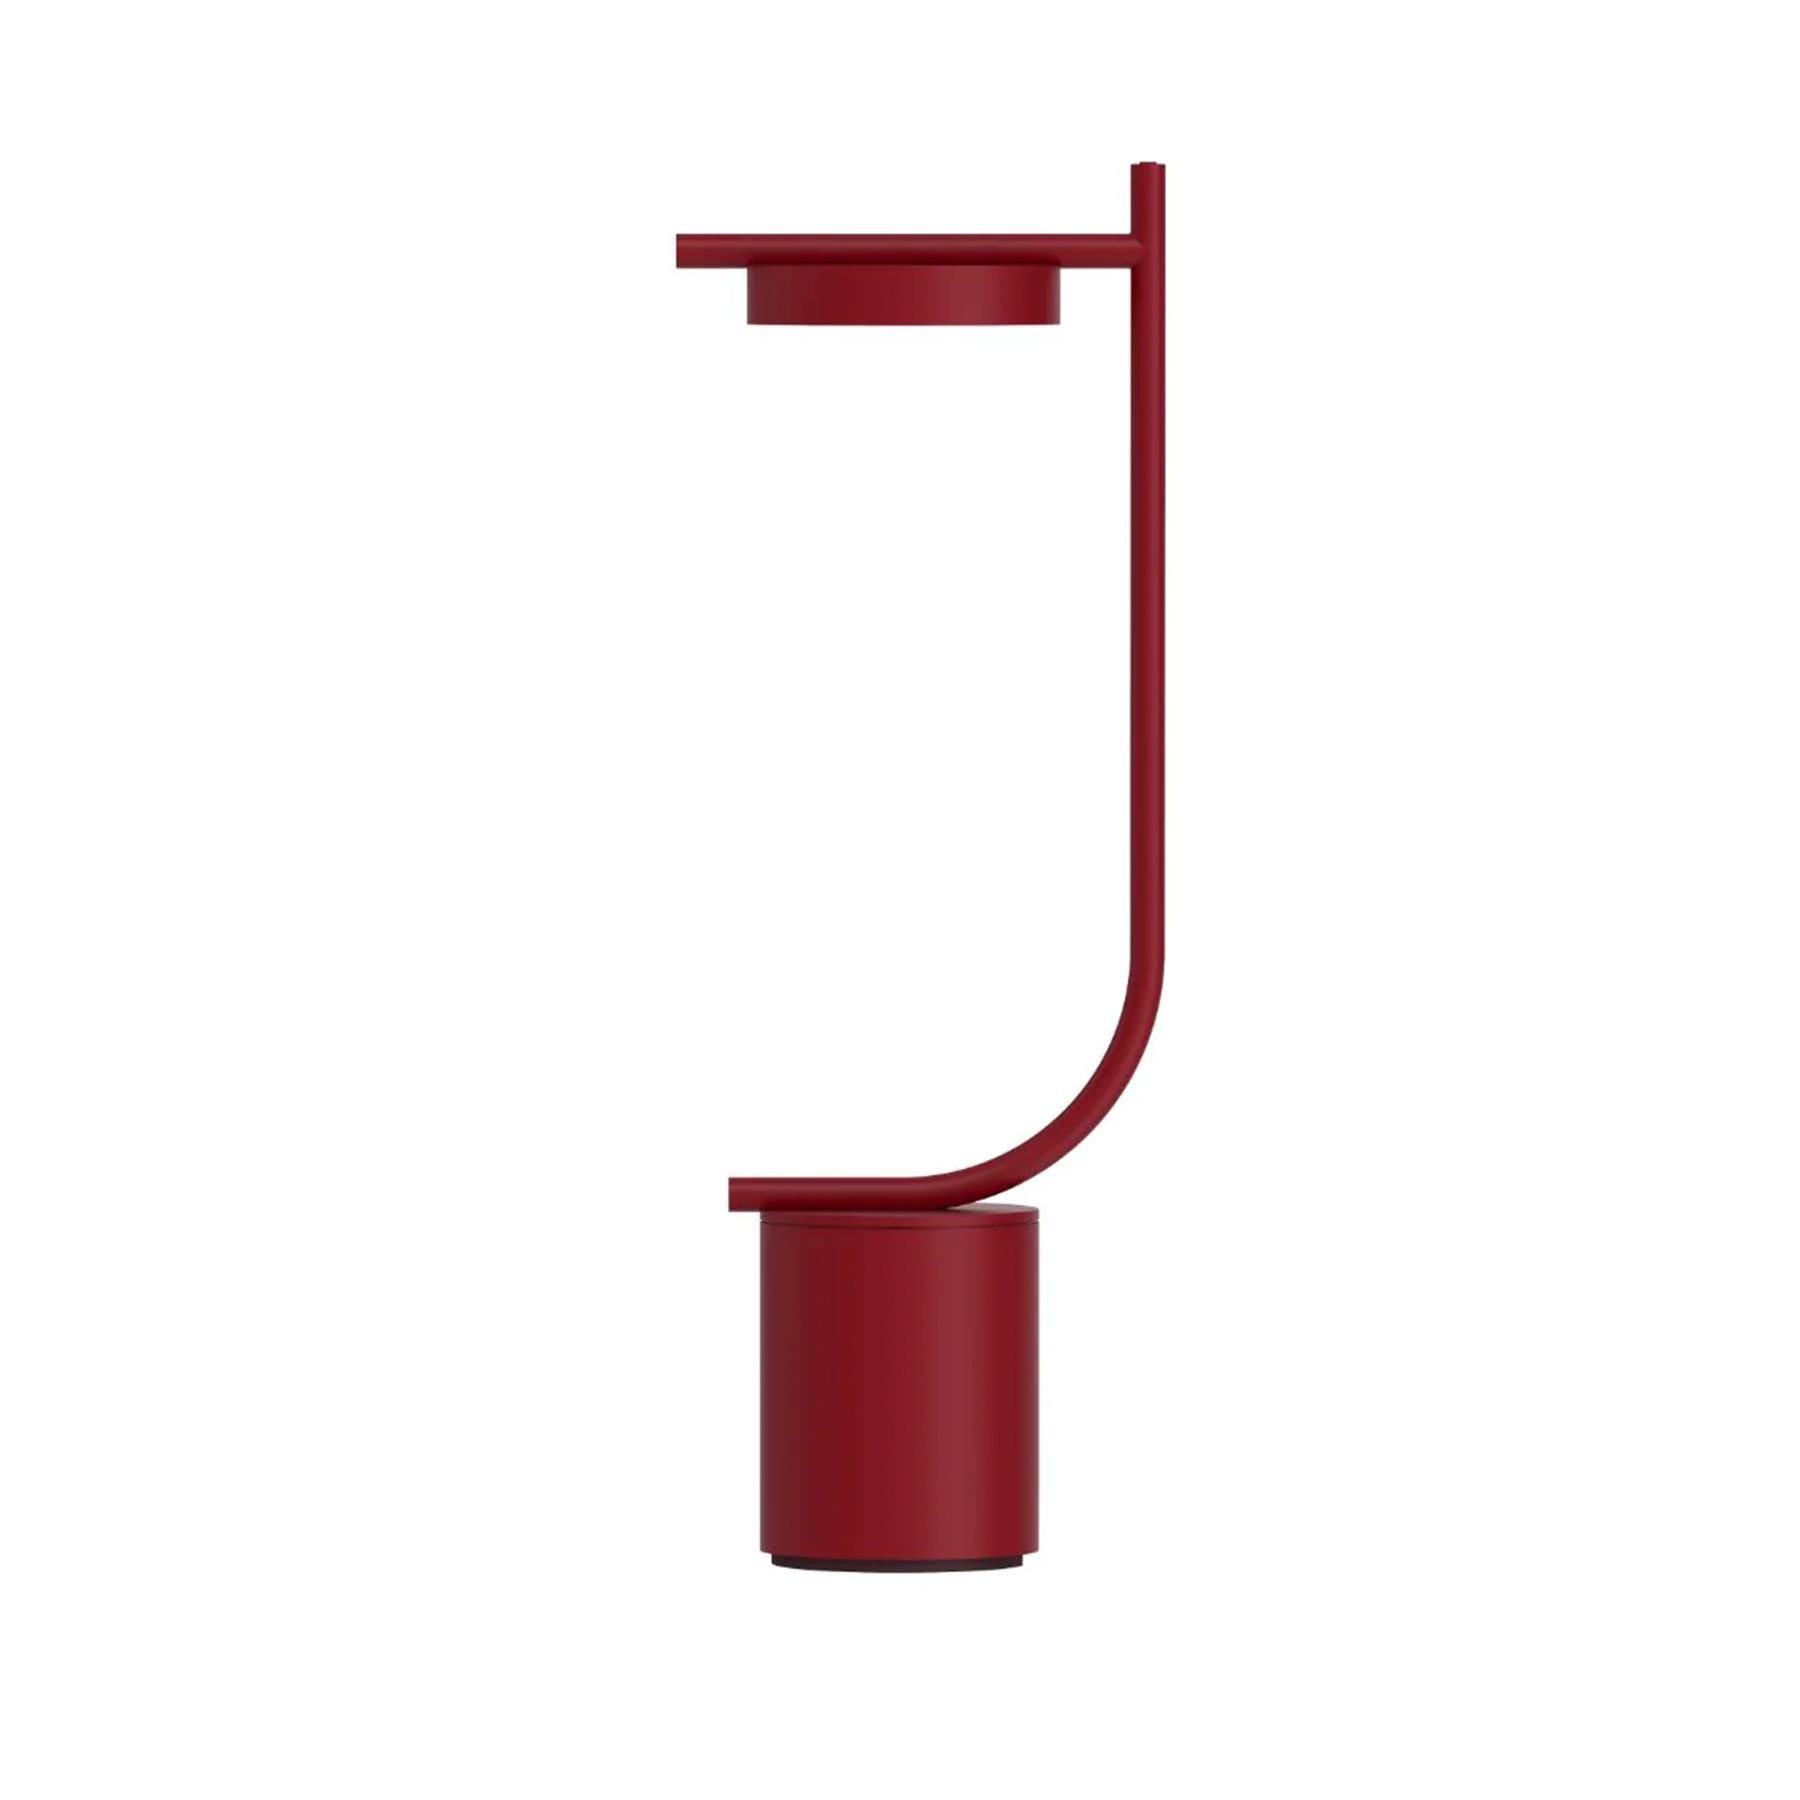 Grupa Igram Portable Table Lamp J Shape Red Designer Lighting From Holloways Of Ludlow